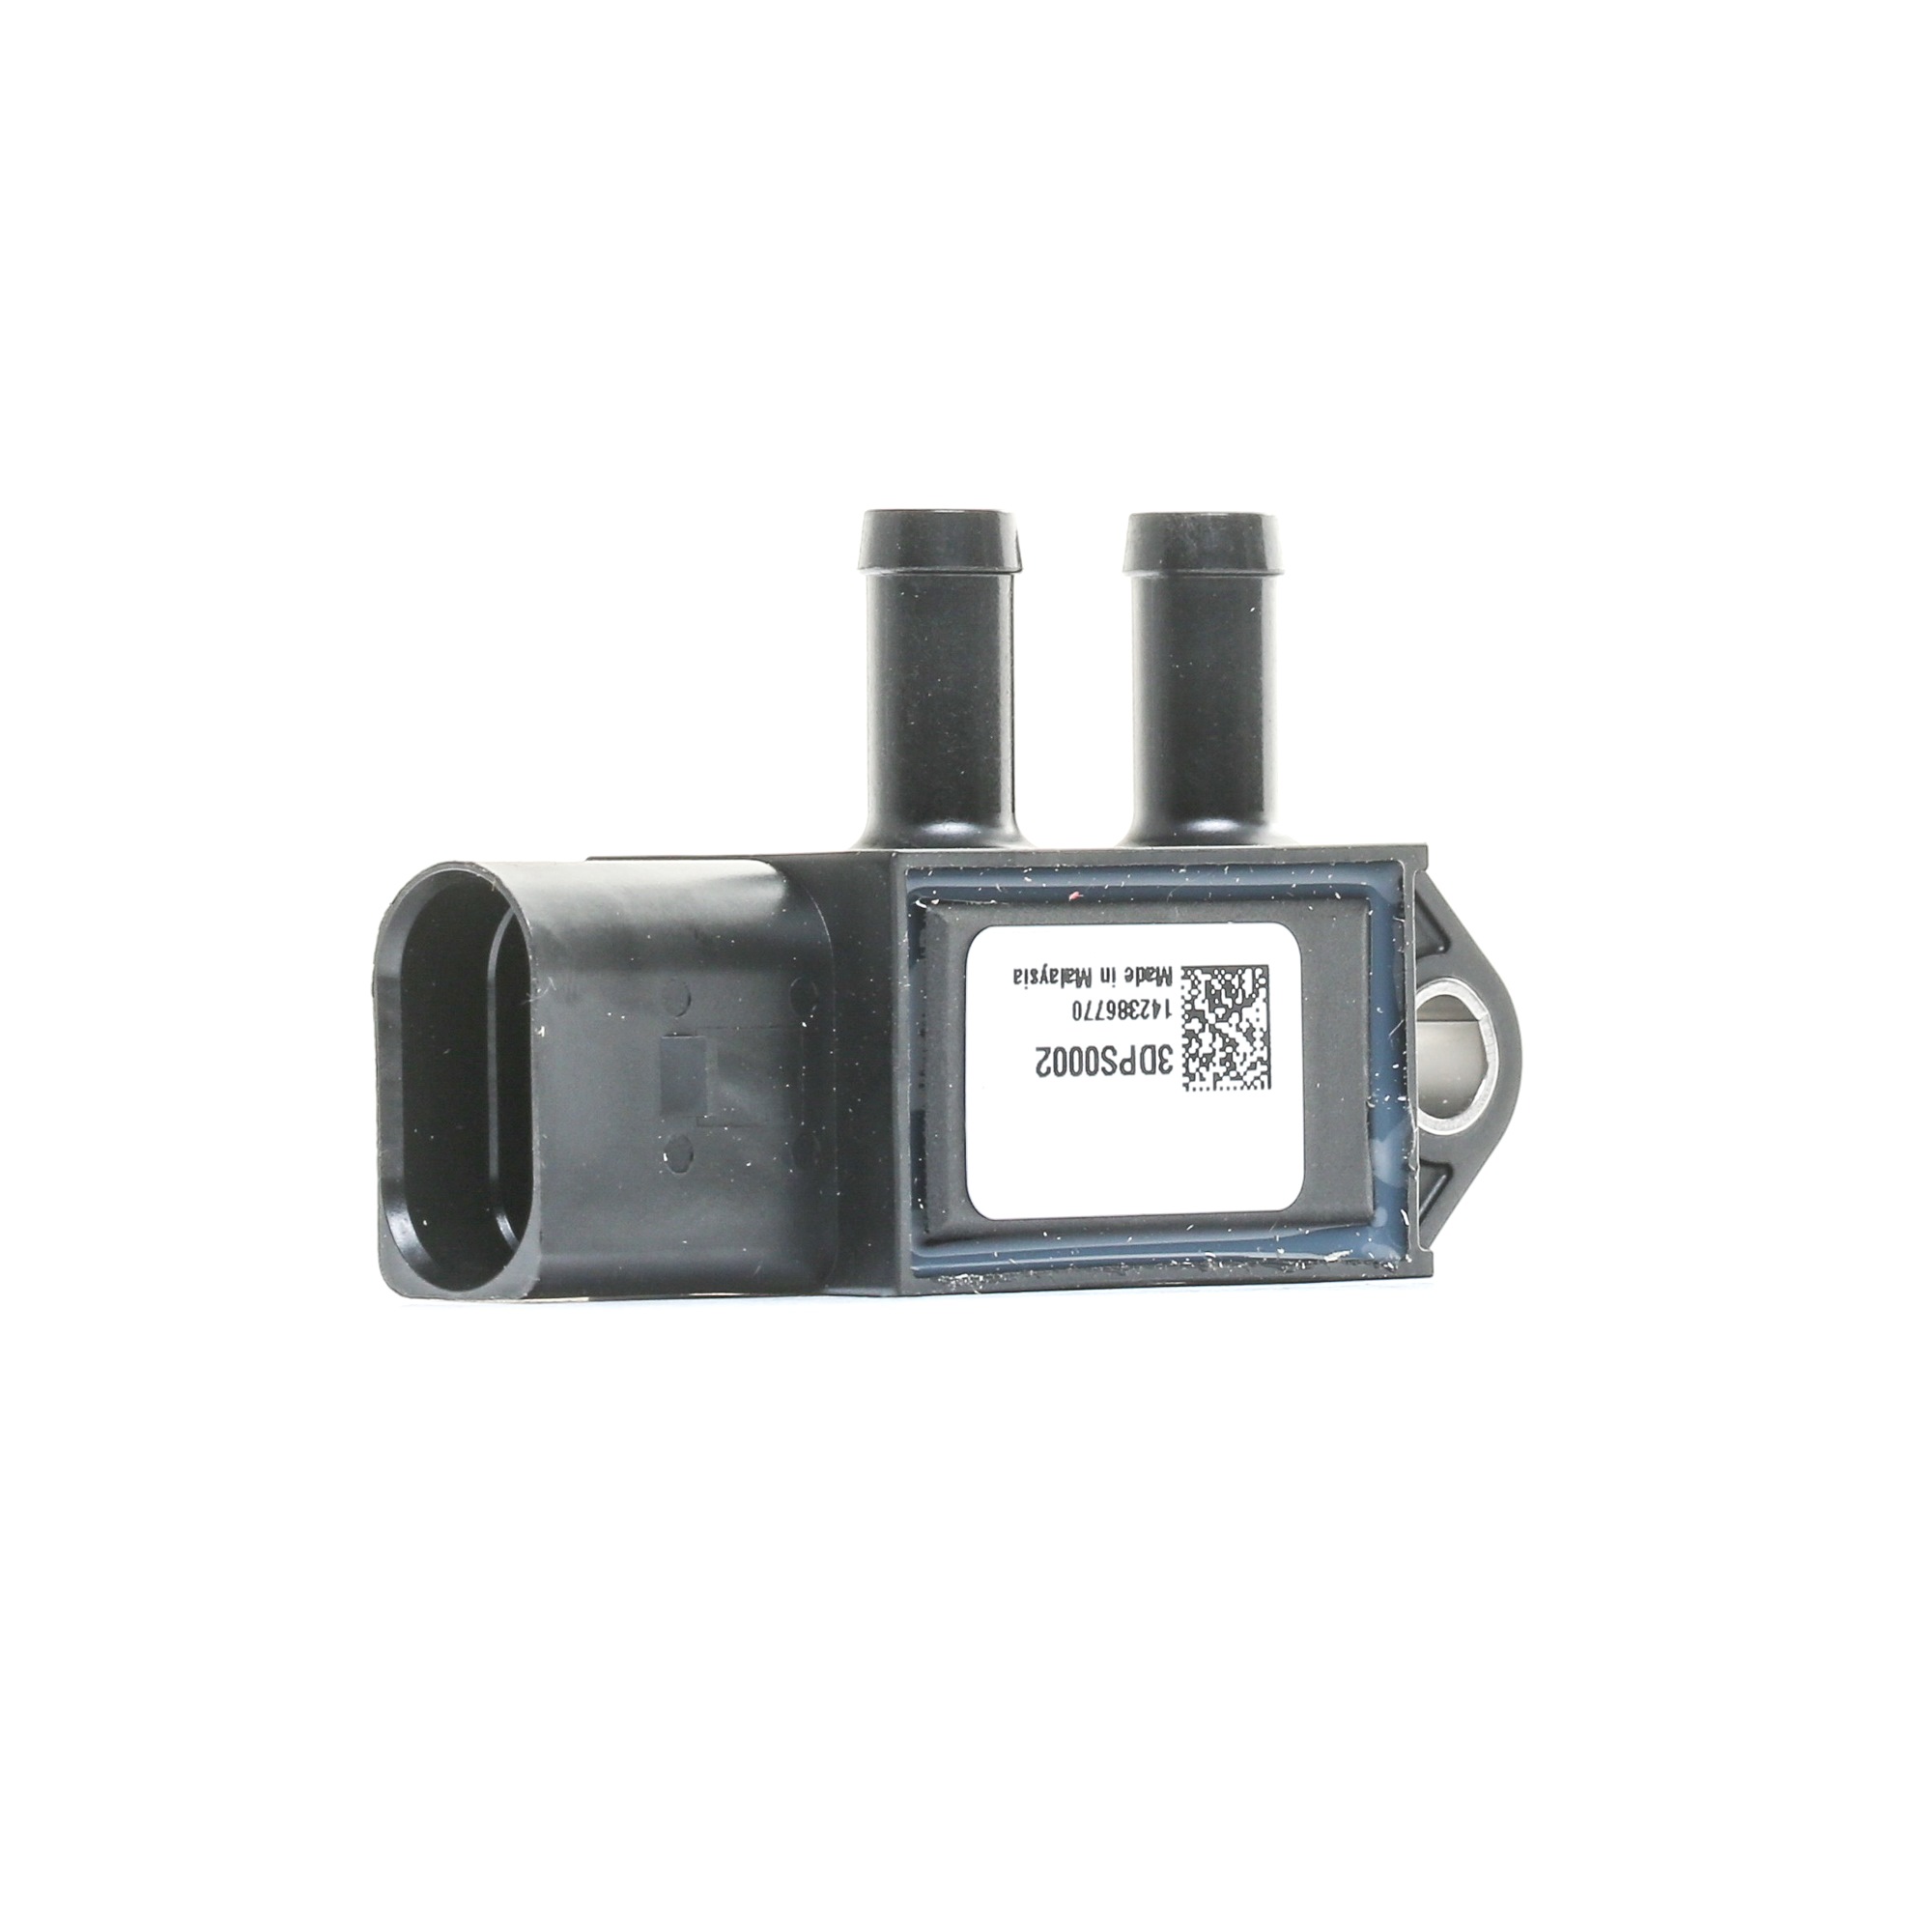 FEBI BILSTEIN Sensor, exhaust pressure 100853 Volkswagen CADDY 2003